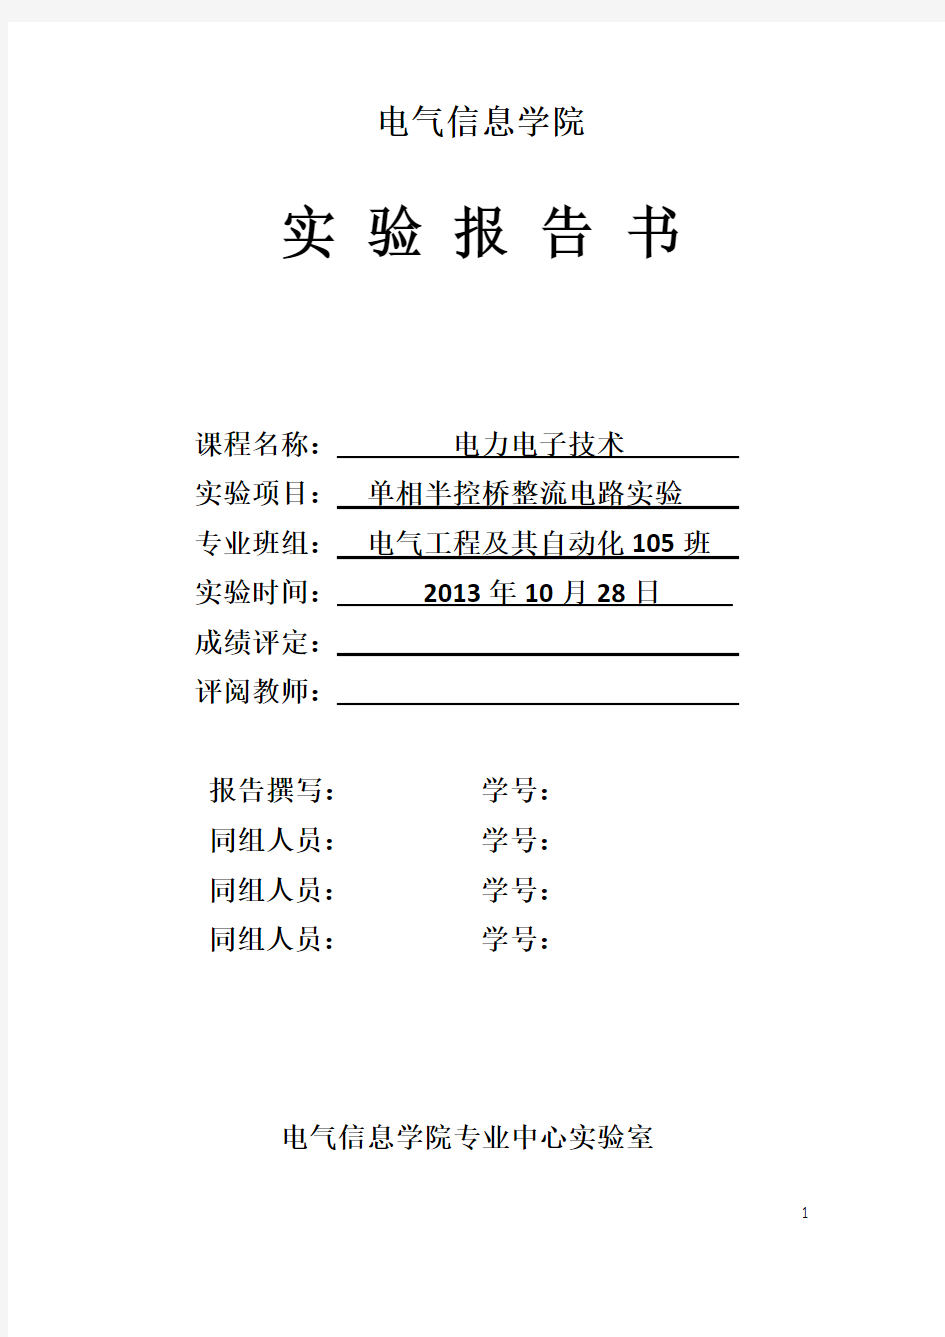 四川大学单相半控桥式整流电路实验报告